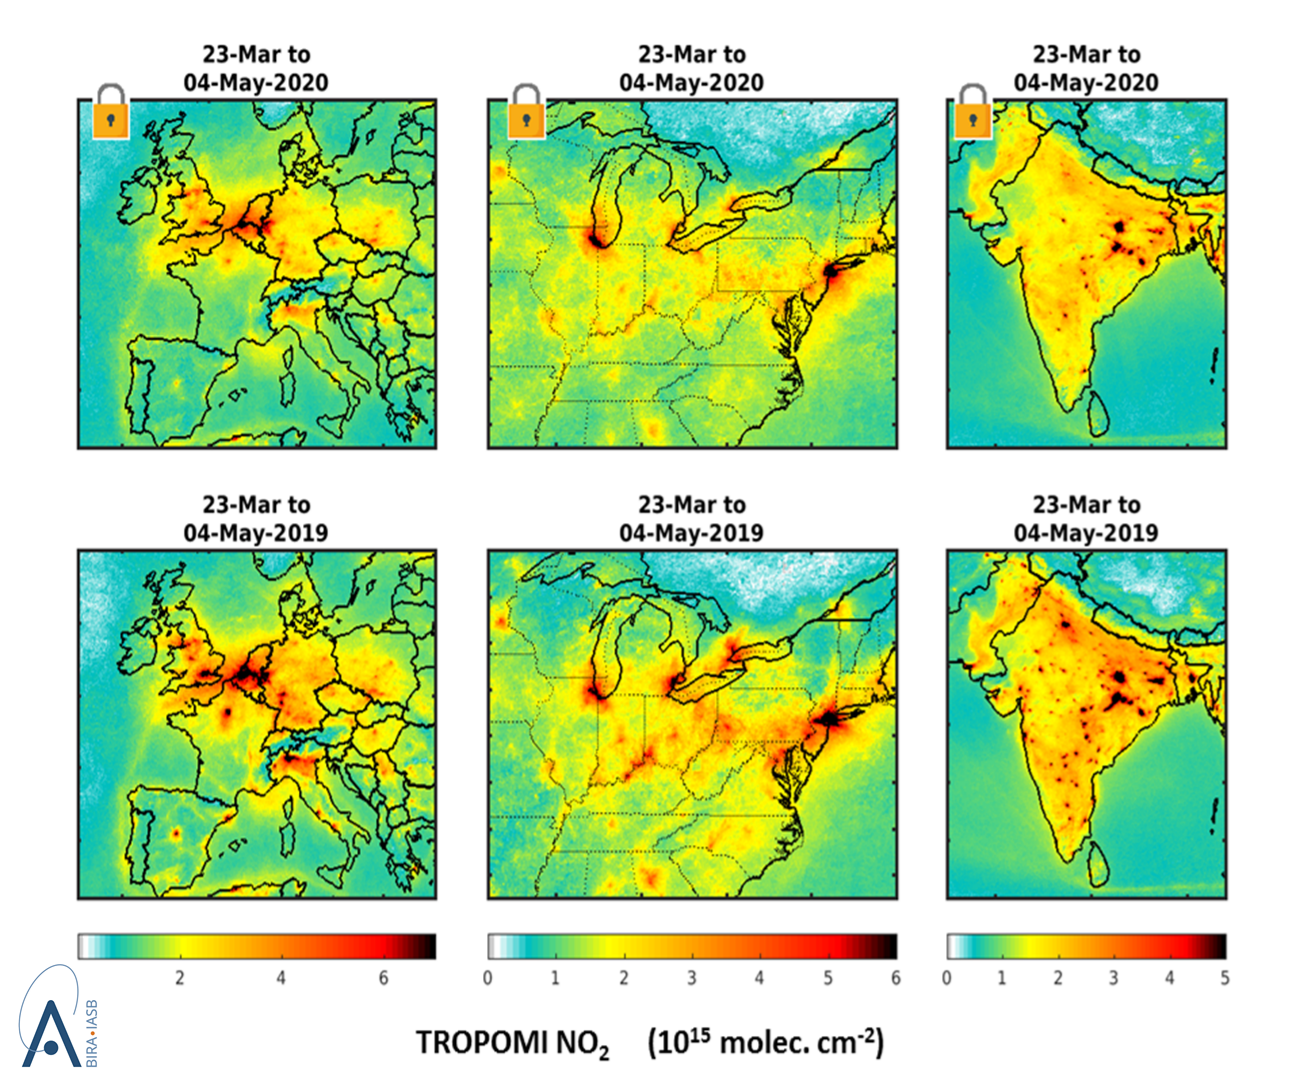 Friss műholdas mérési adatok a nitrogén-dioxid koncentrációjáról a 2019-es megfigyelésekkel összevetve Európáról, az USA keleti államairól és Indiáról. Az adatokat átlagolták az ábrán megadott időszakra vonatkozóan